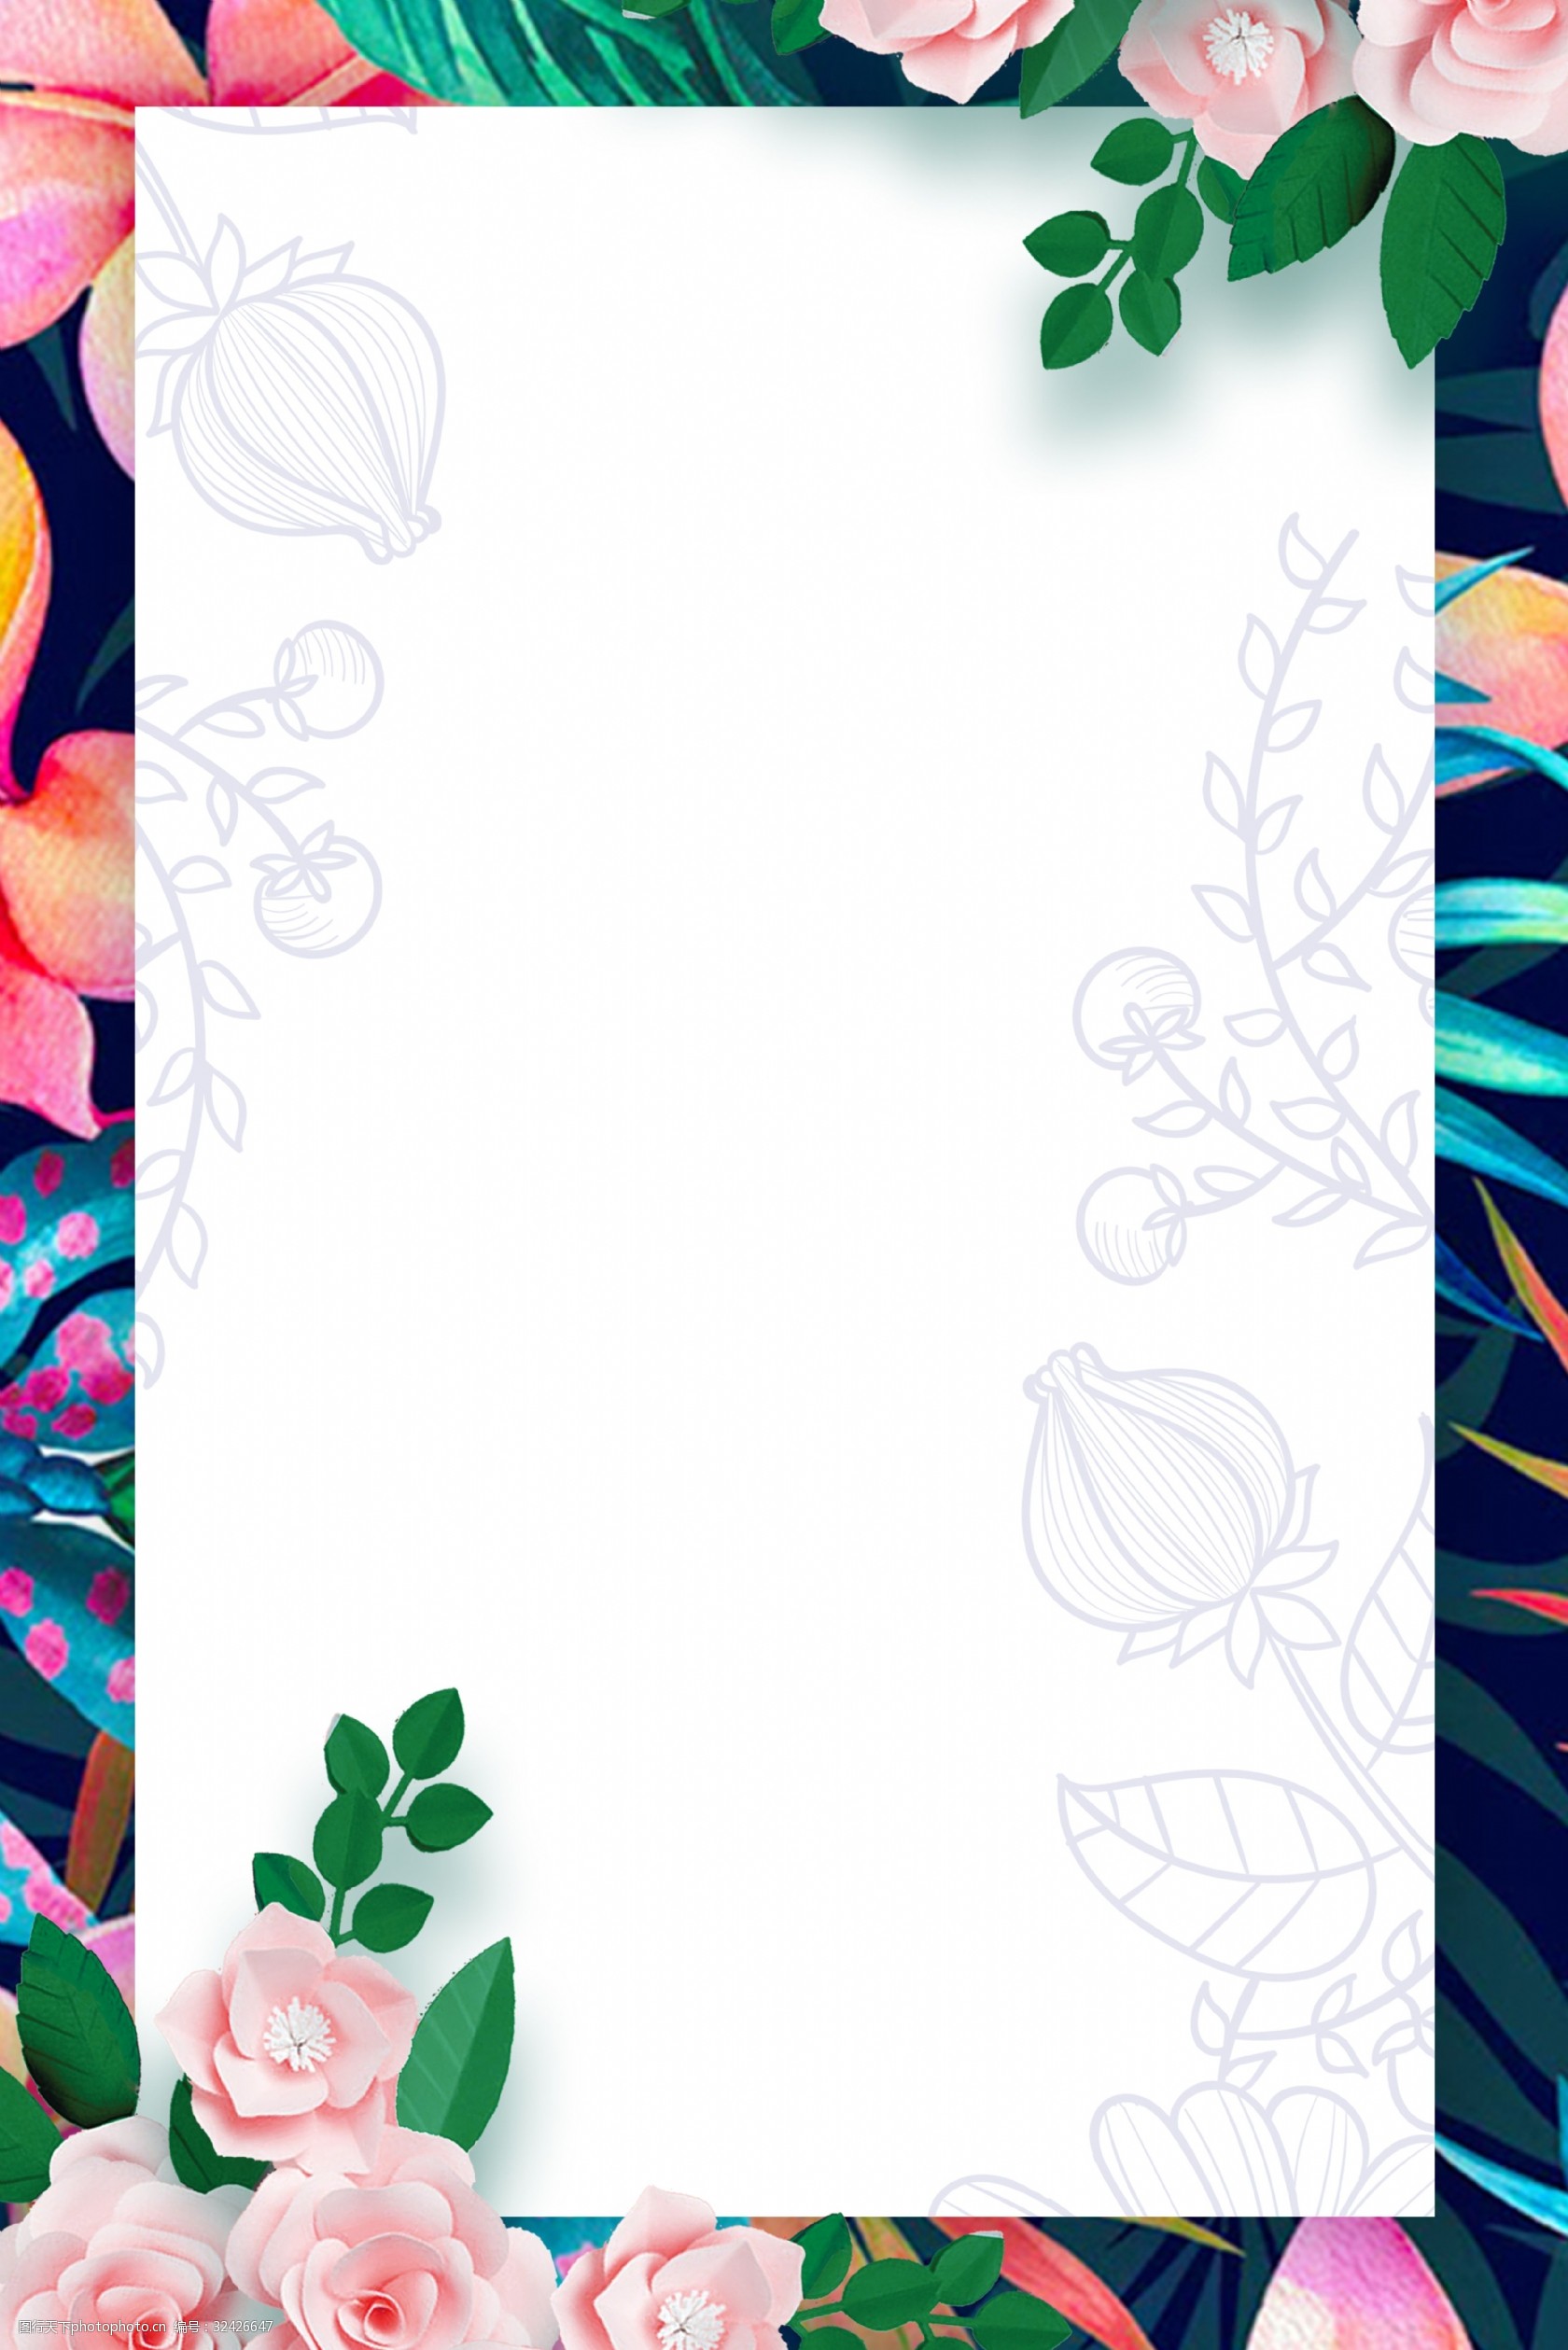 清新花朵花卉背景海报 清新花朵 小清新 绿植边框 花卉背景 手绘 简约